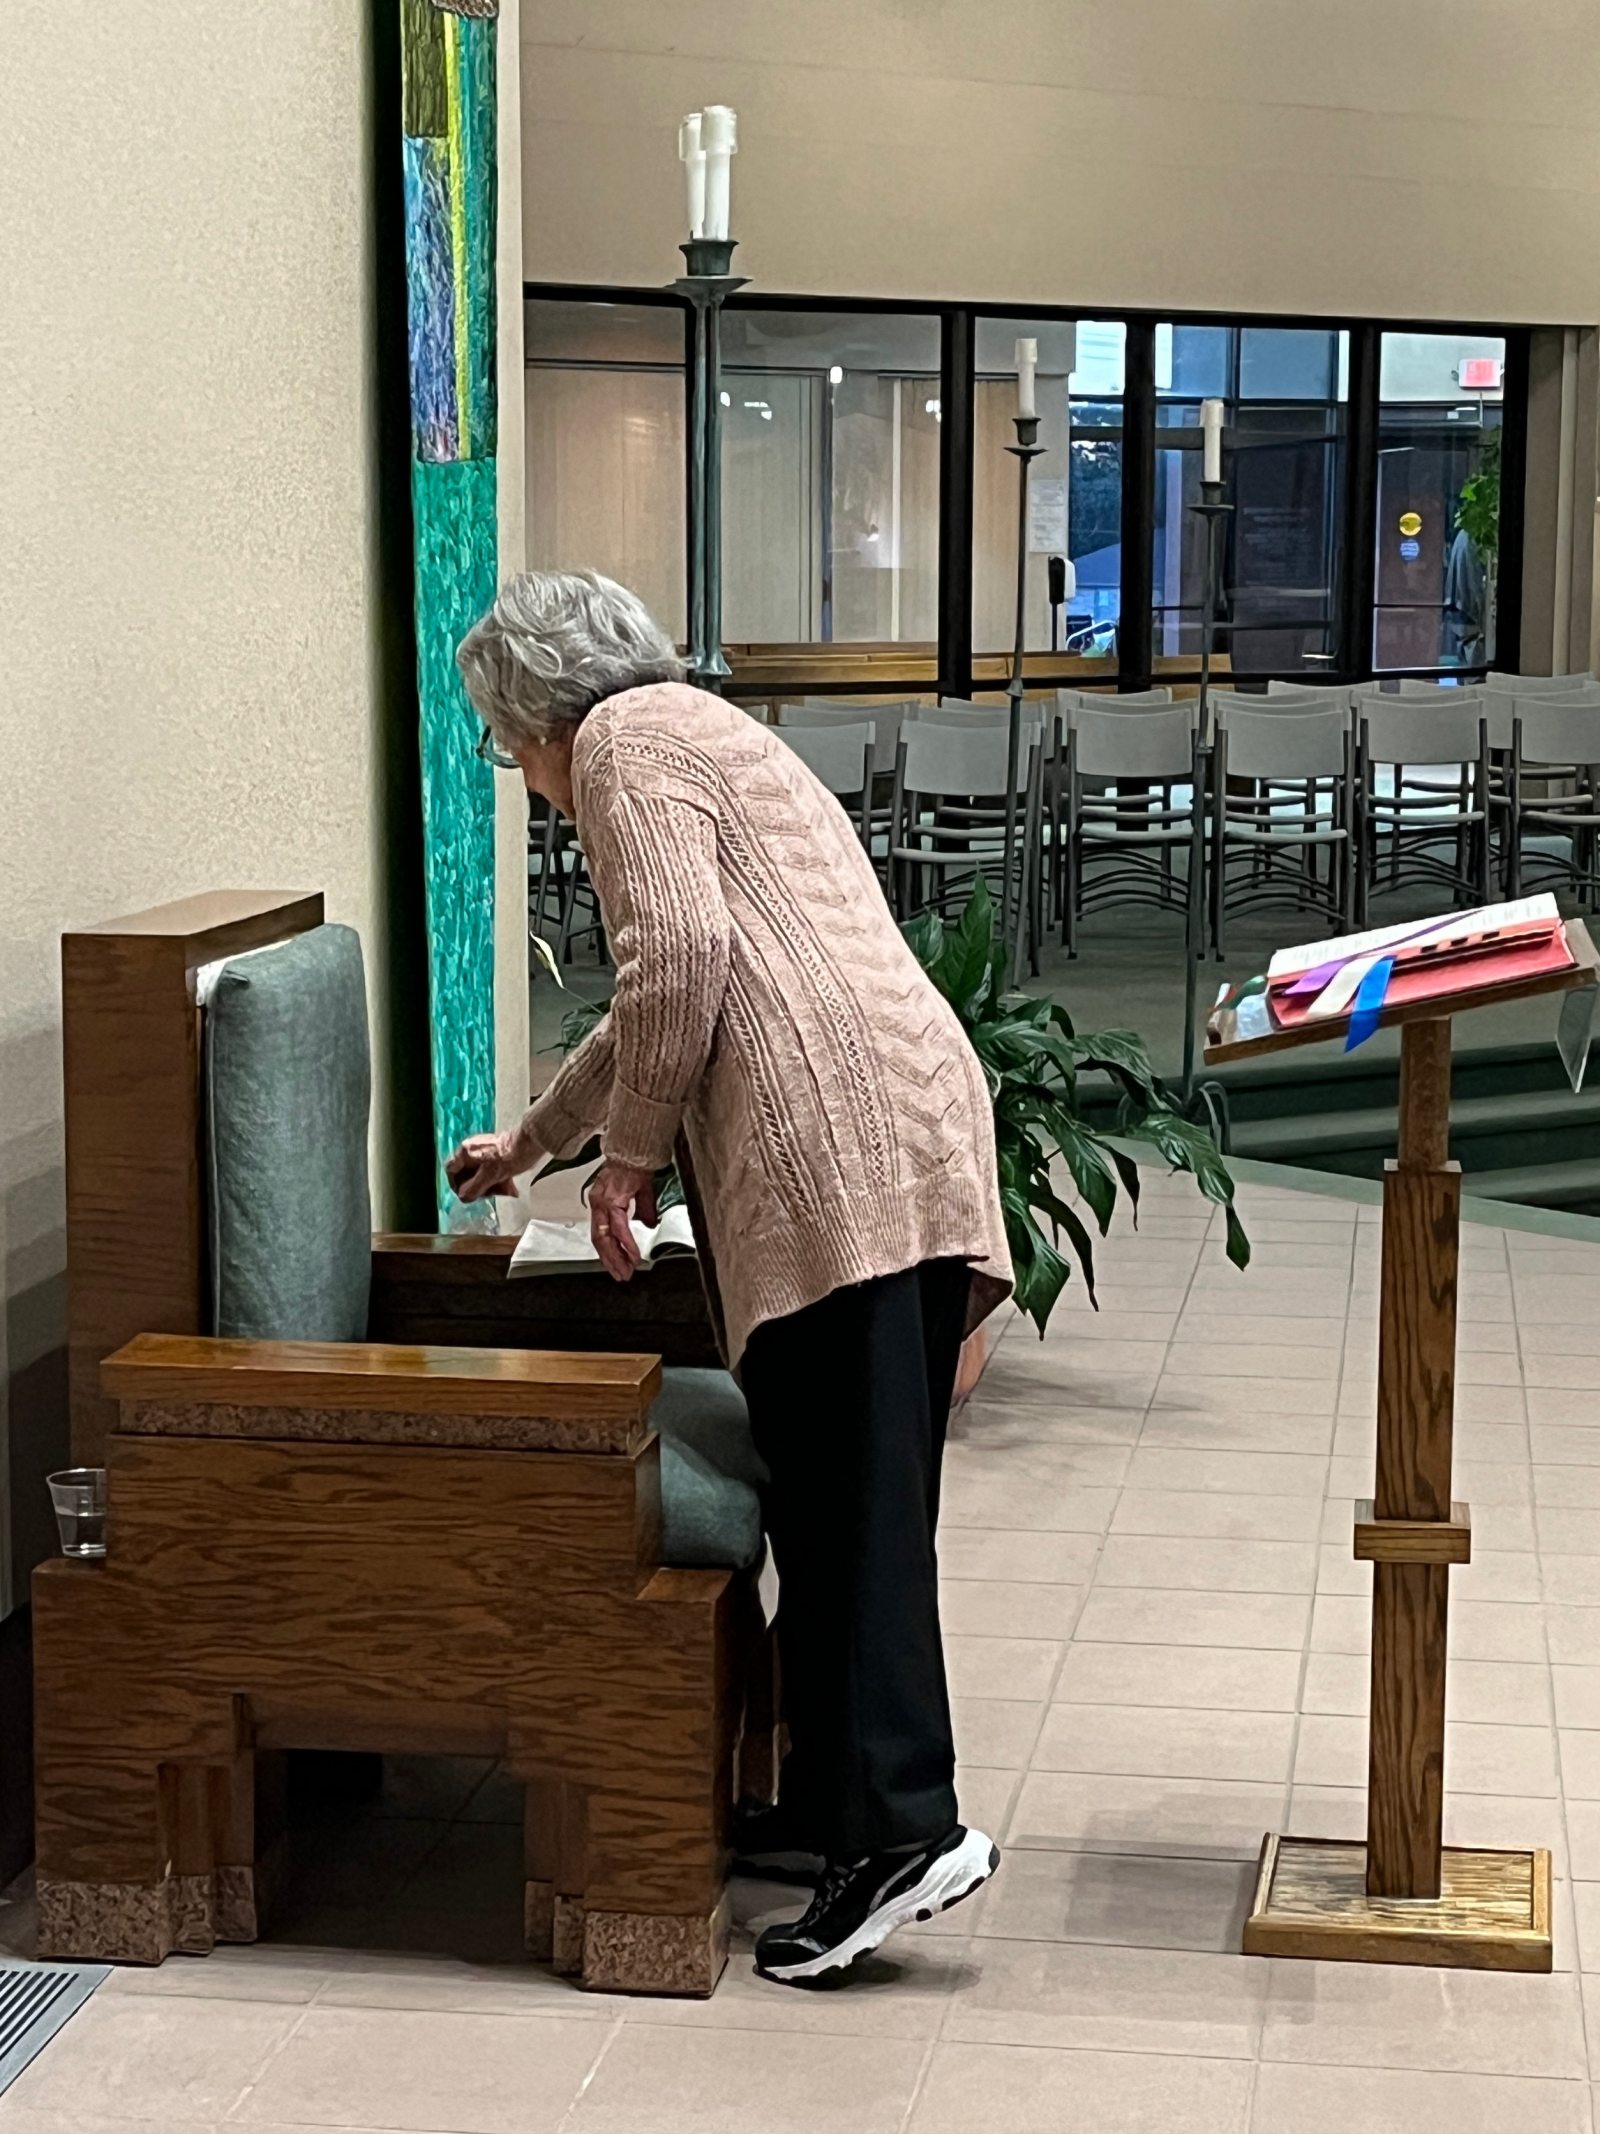 A woman dusts a chair inside a church